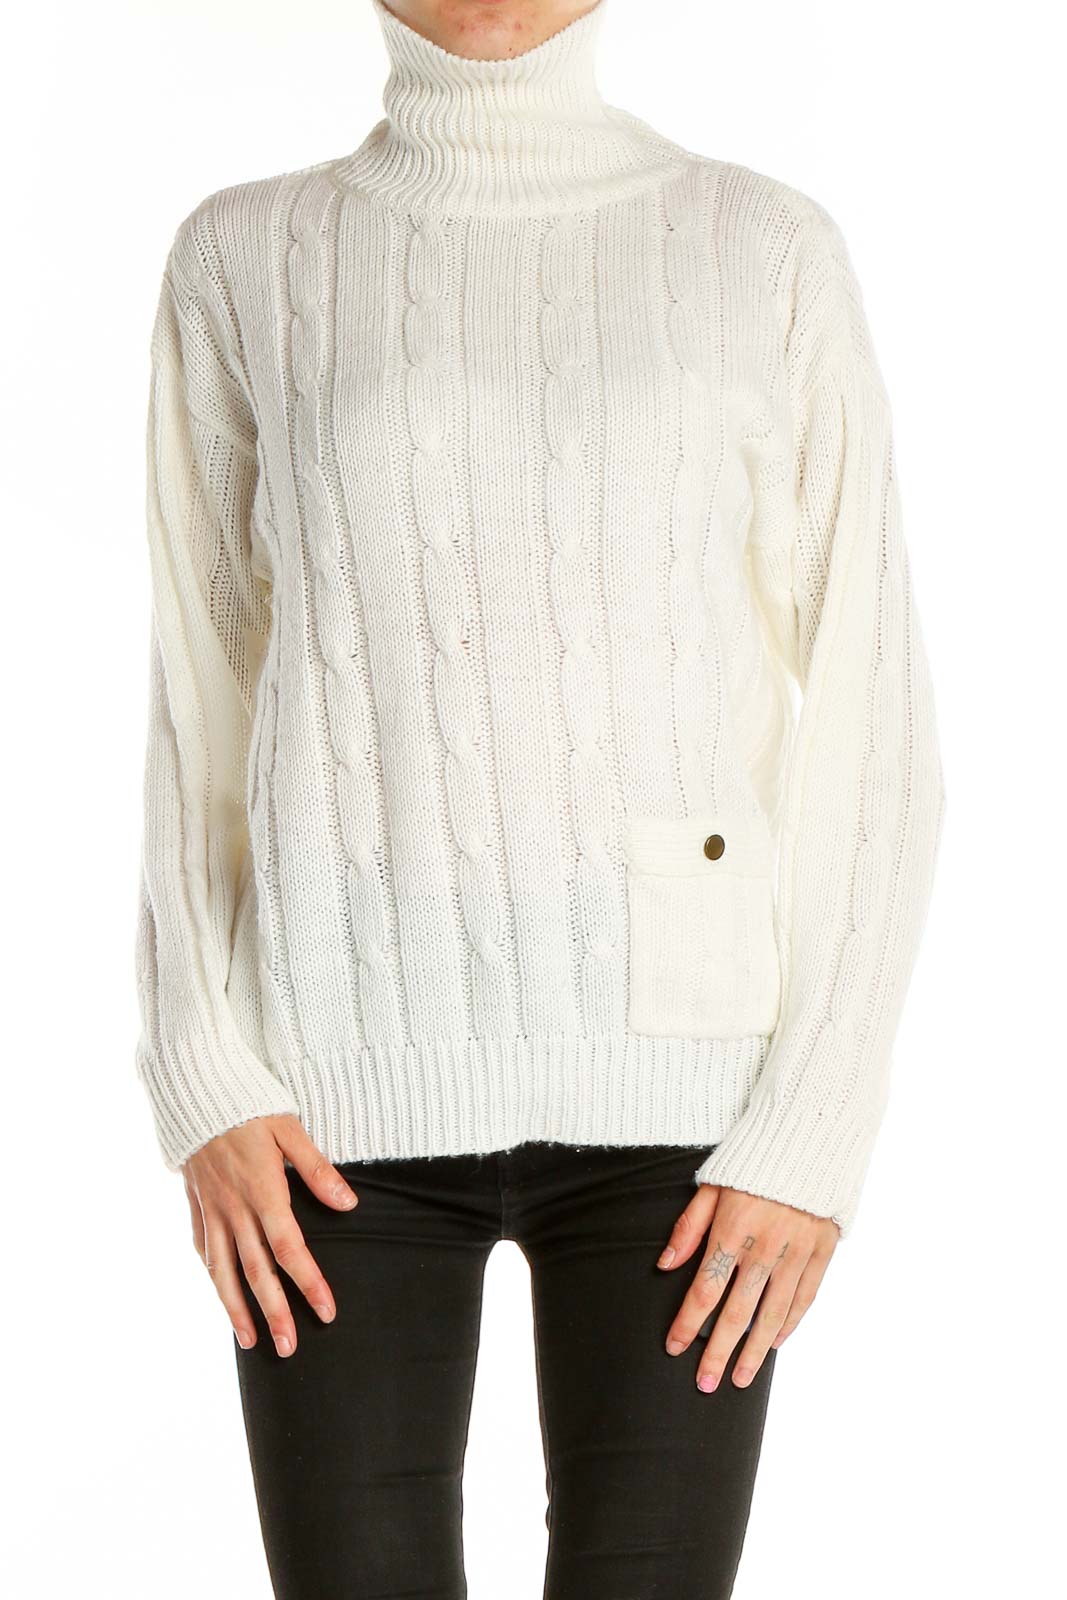 White Retro Sweater Front